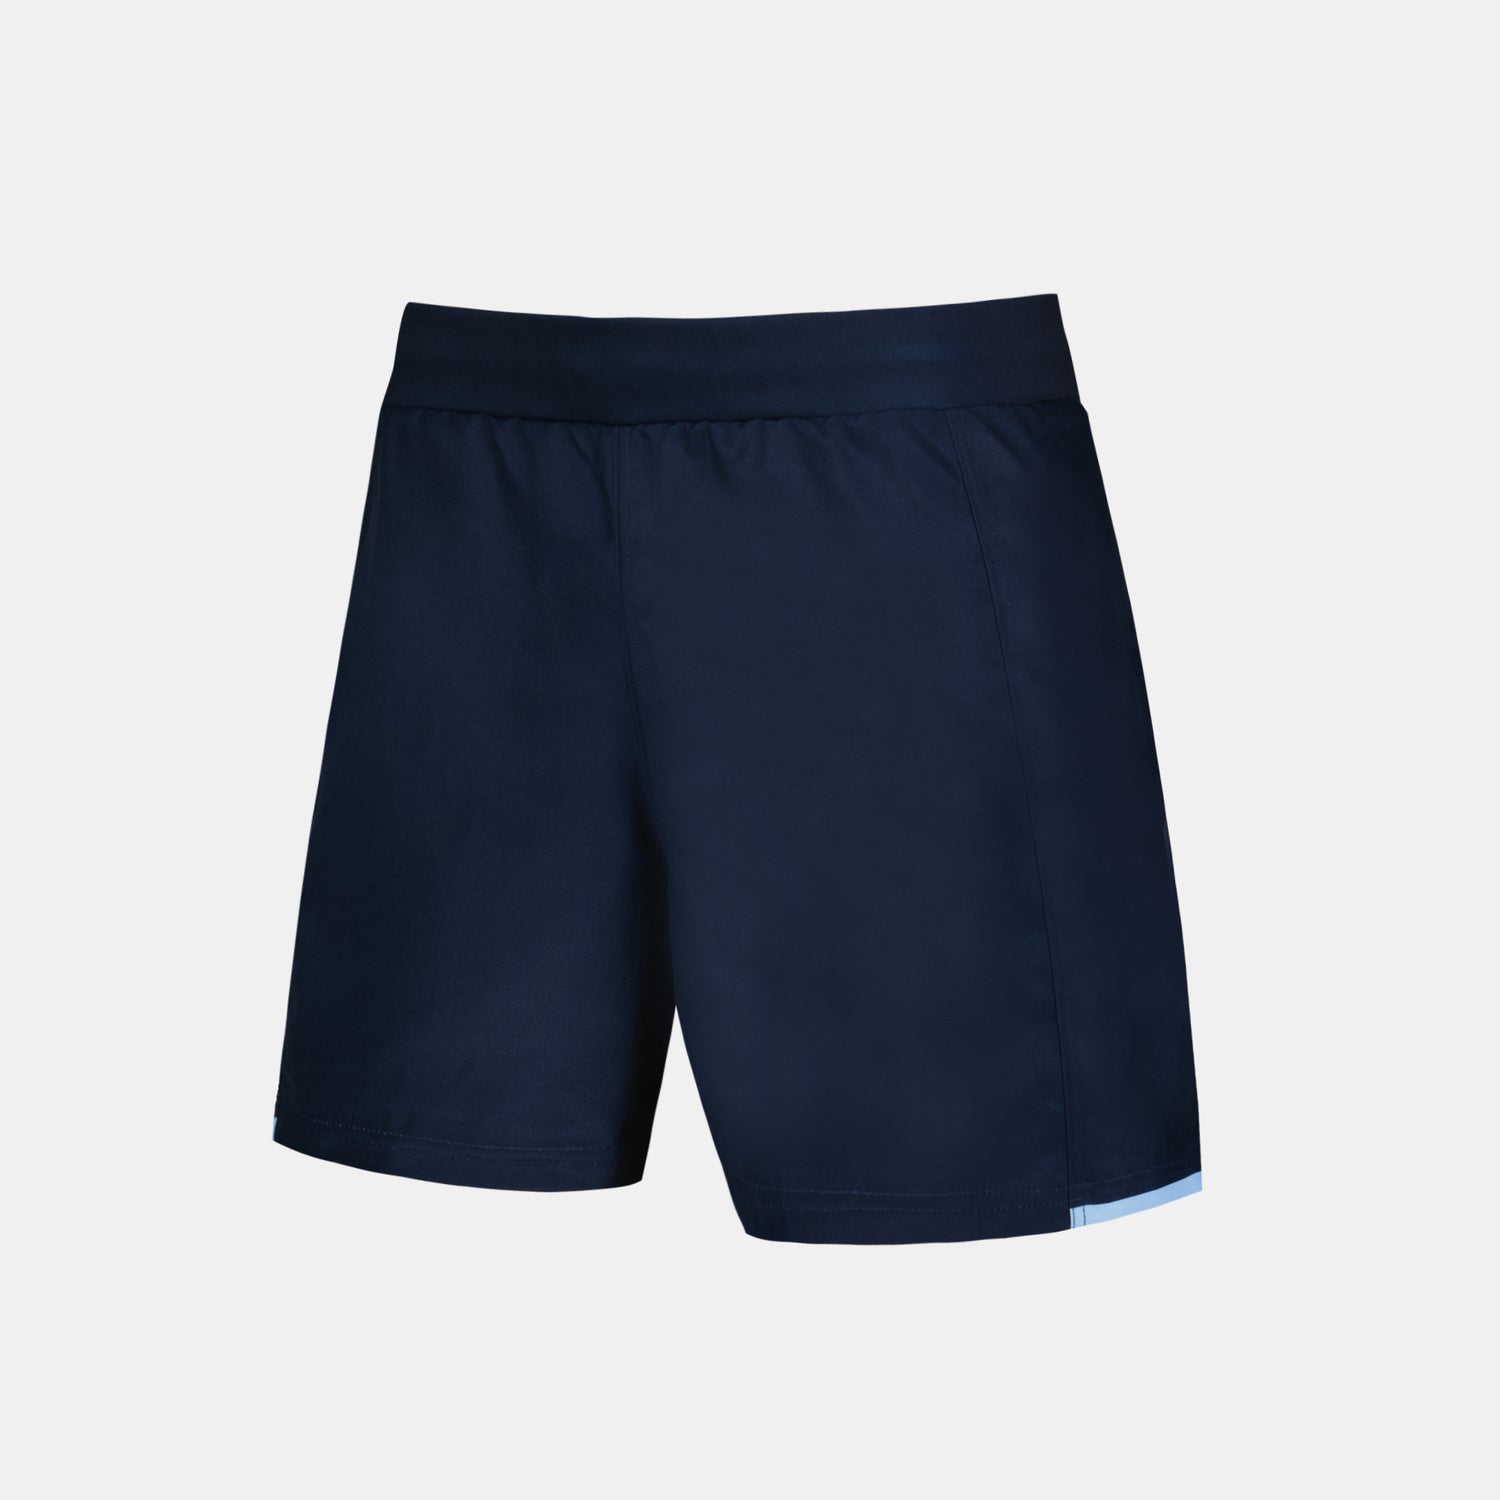 2320309-AB REPLICA Short M blue navy  | Shorts für Herren